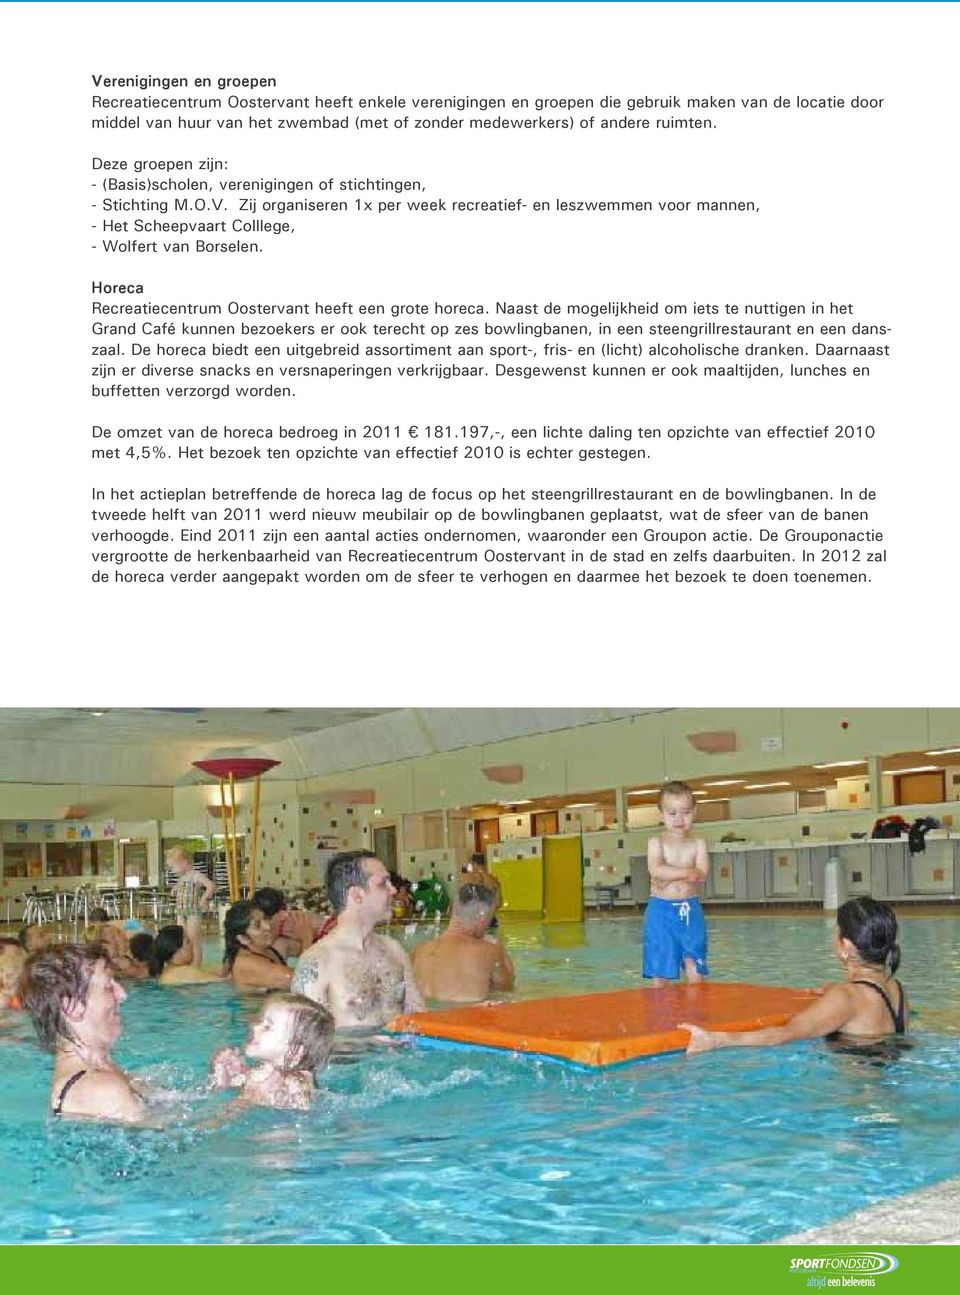 Zij organiseren 1x per week recreatief- en leszwemmen voor mannen, - Het Scheepvaart Colllege, - Wolfert van Borselen. Horeca Recreatiecentrum Oostervant heeft een grote horeca.